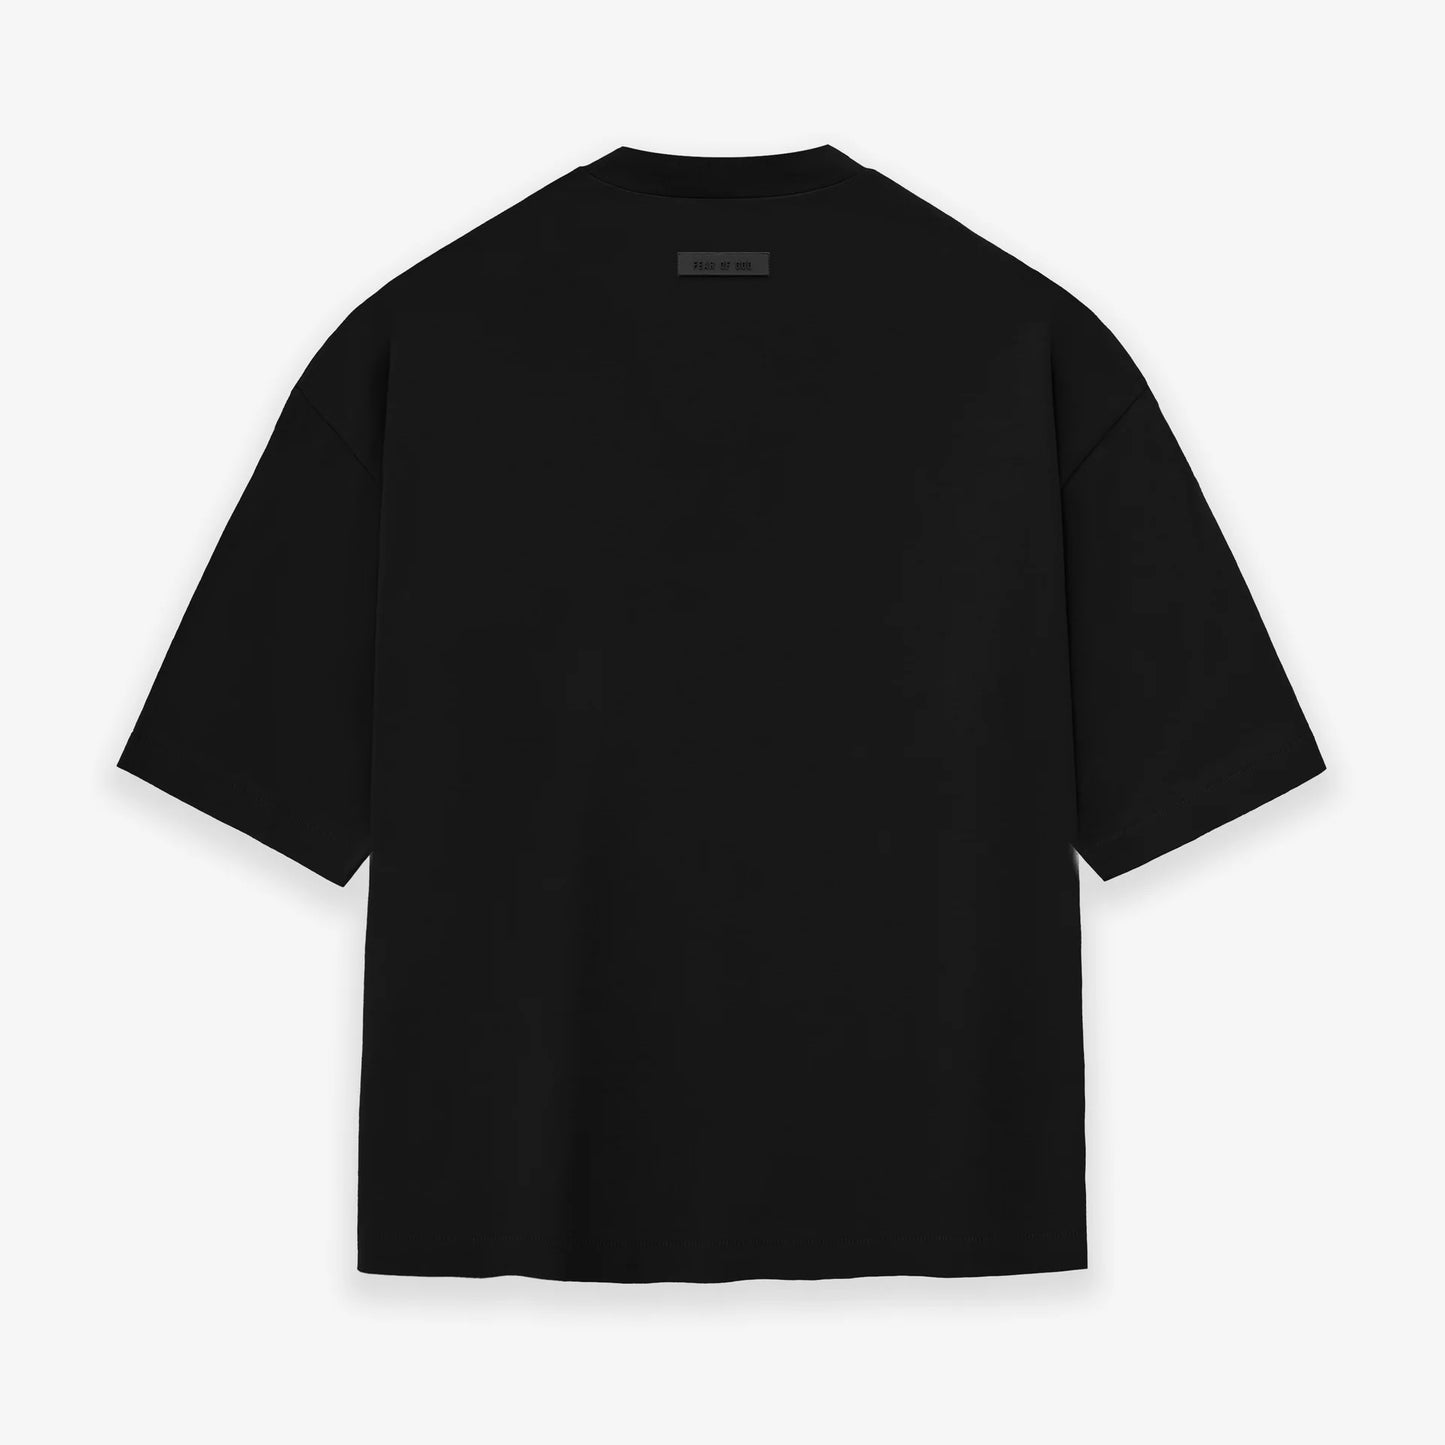 Fear of God Essentials Jet Black V2 T-Shirt Back VIew